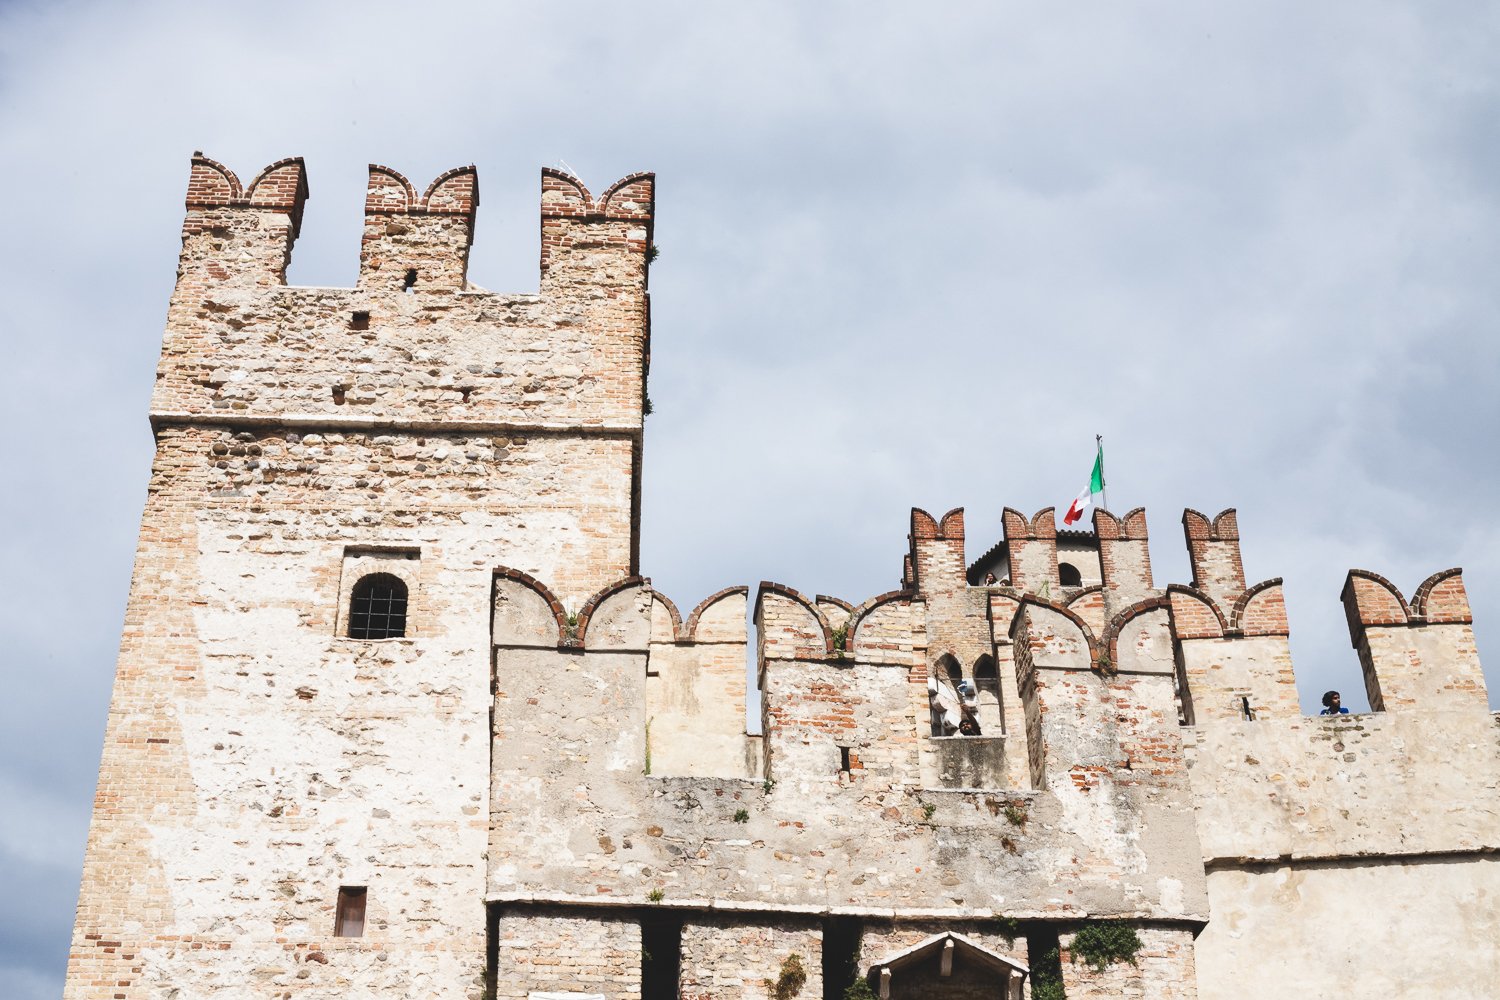 Le château Scaligero de Sirmione. On voit la tour et d'autres éléments fortifiés plus difficilement identifiables.